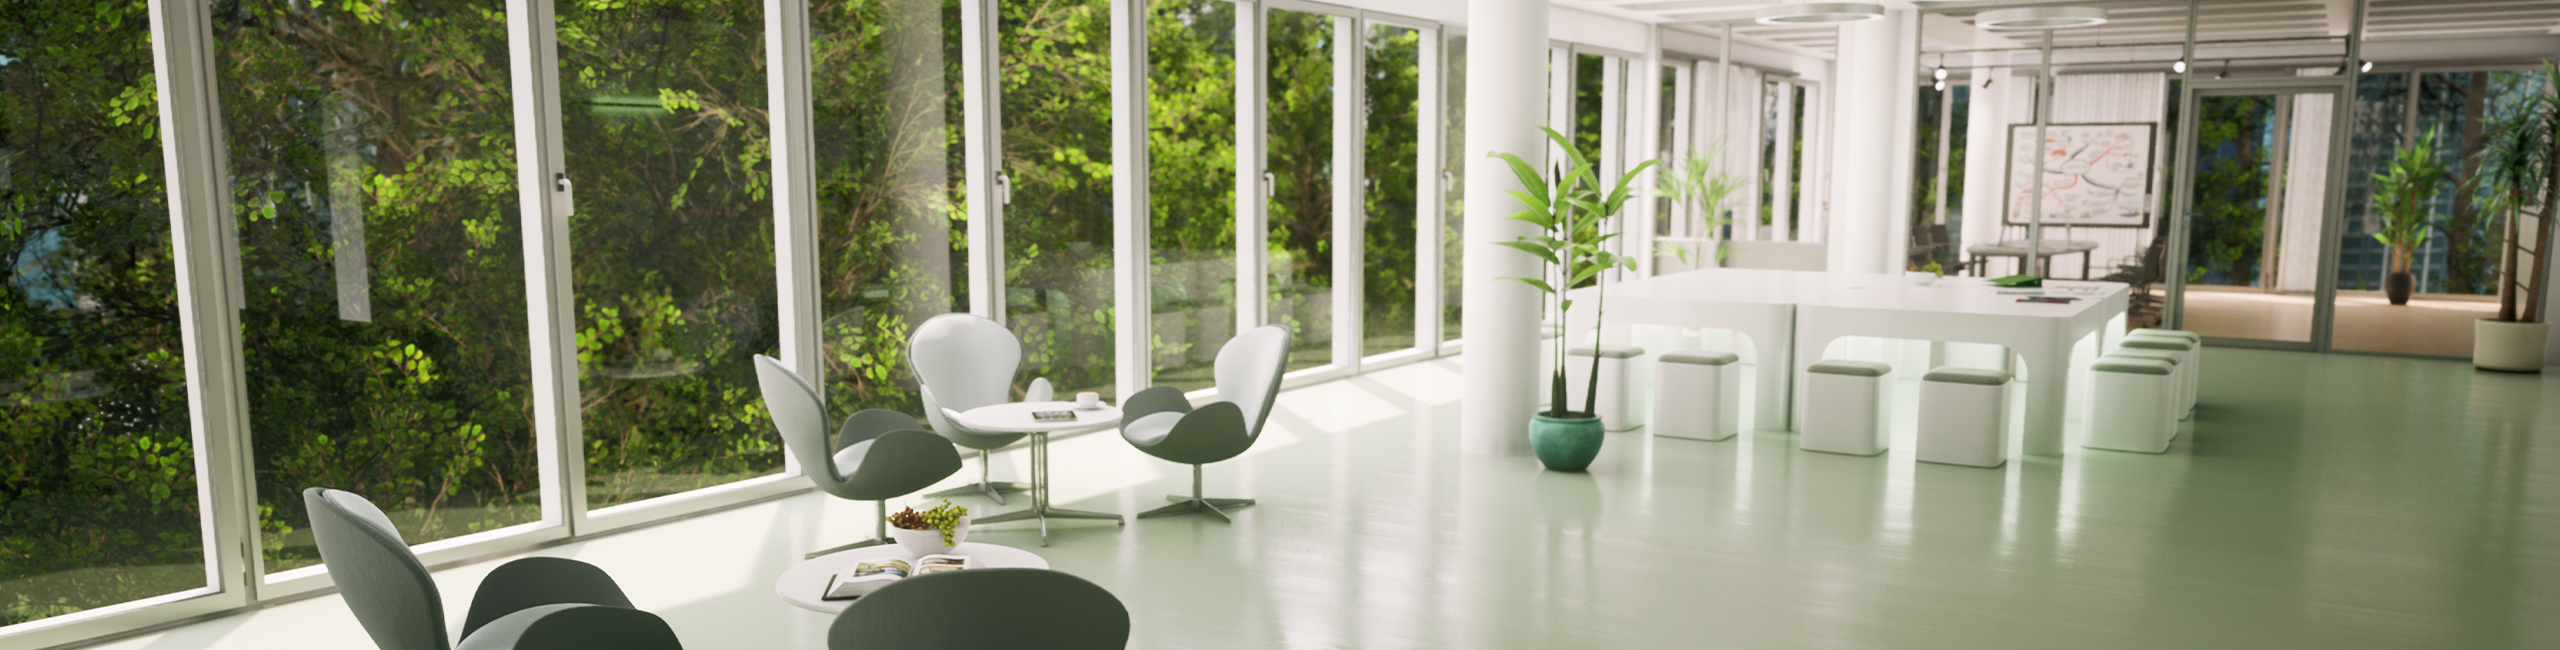 Visualisierung des des Eingangsbereichs im BioTic Office mit grünem Boden und modernen Sitzgelgenheiten